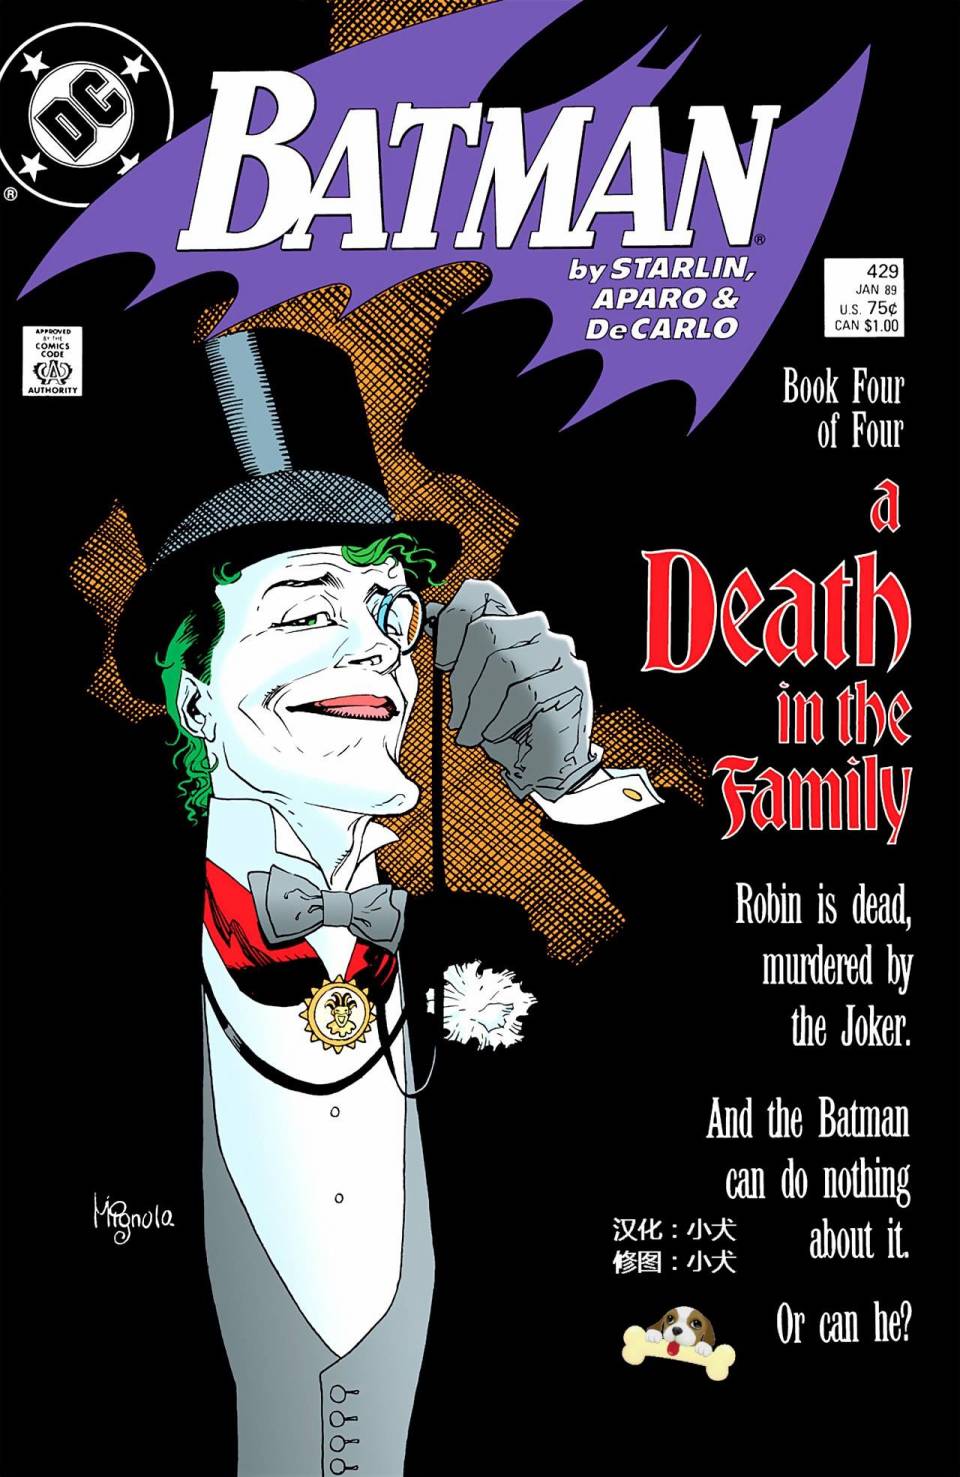 蝙蝠侠第429话家庭之死#4